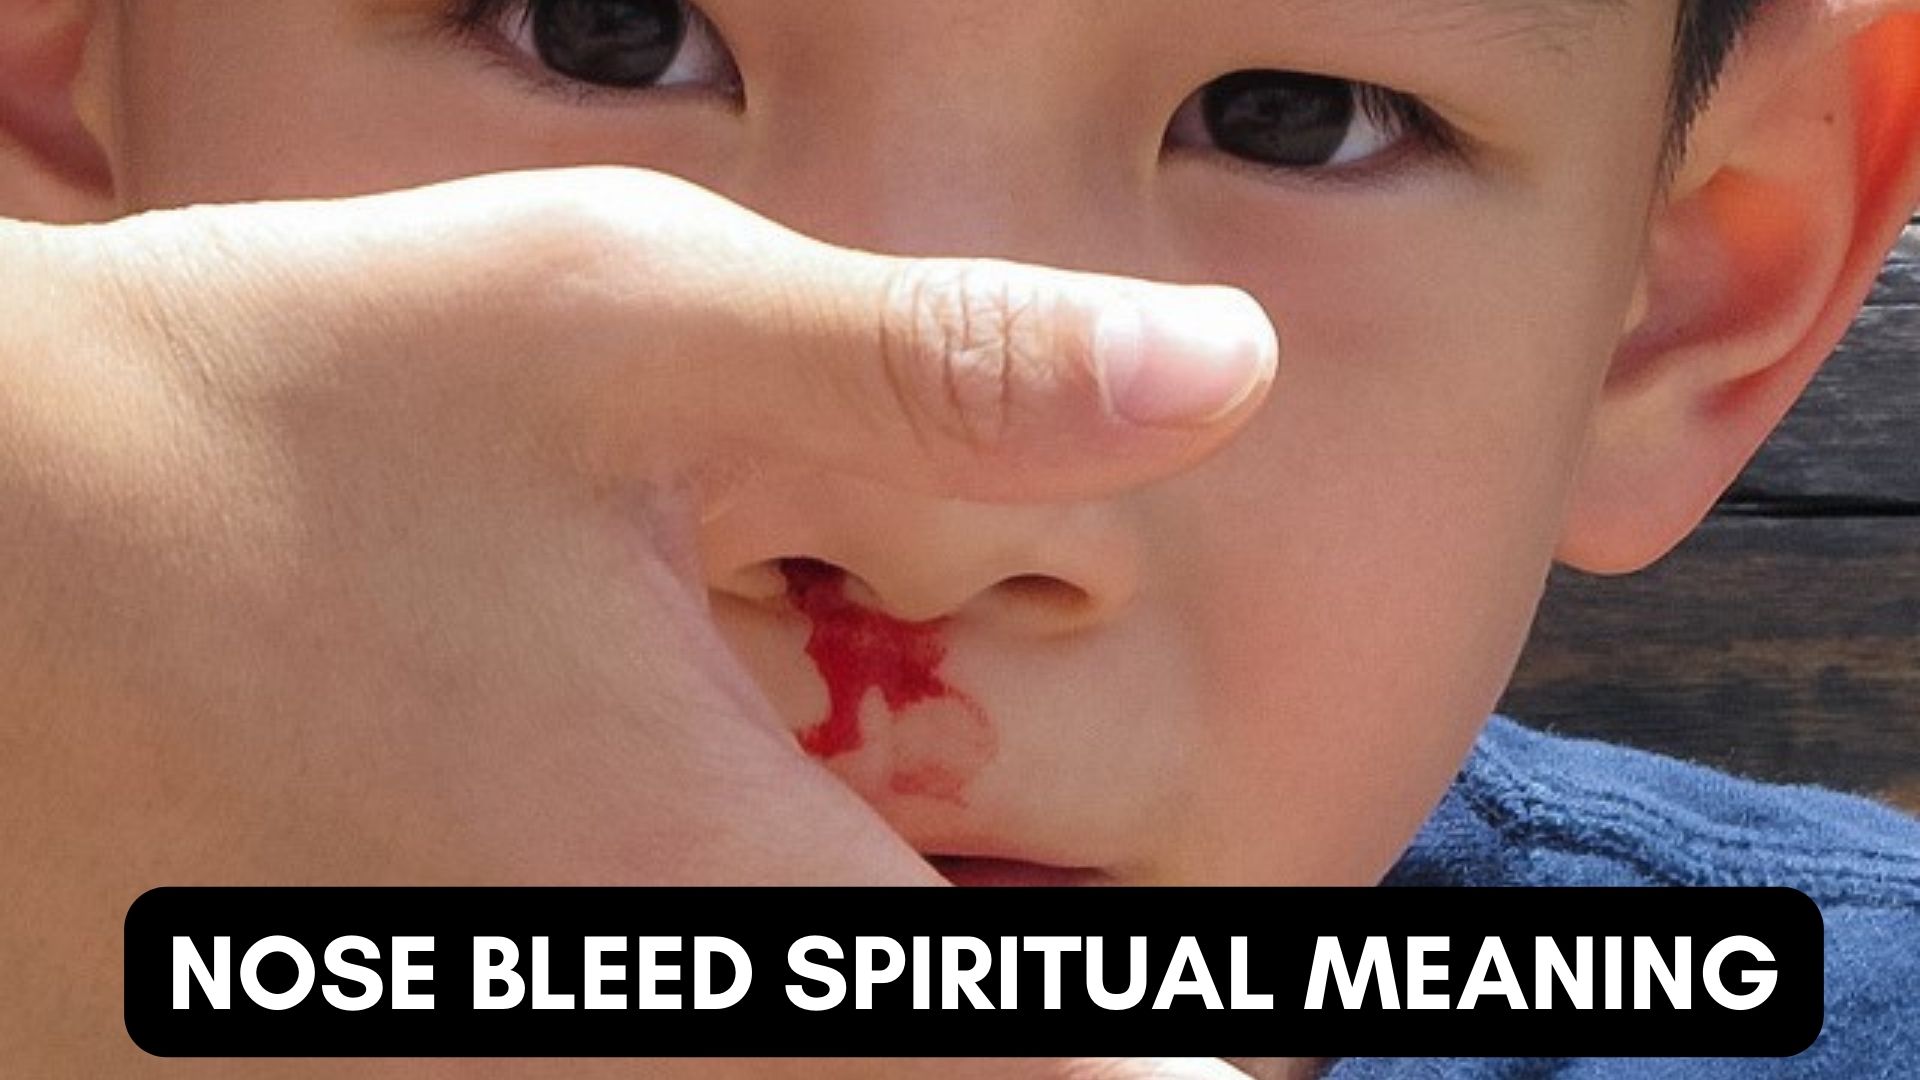 Nose Bleed Spiritual Meaning - An Alarm Call To Awakening